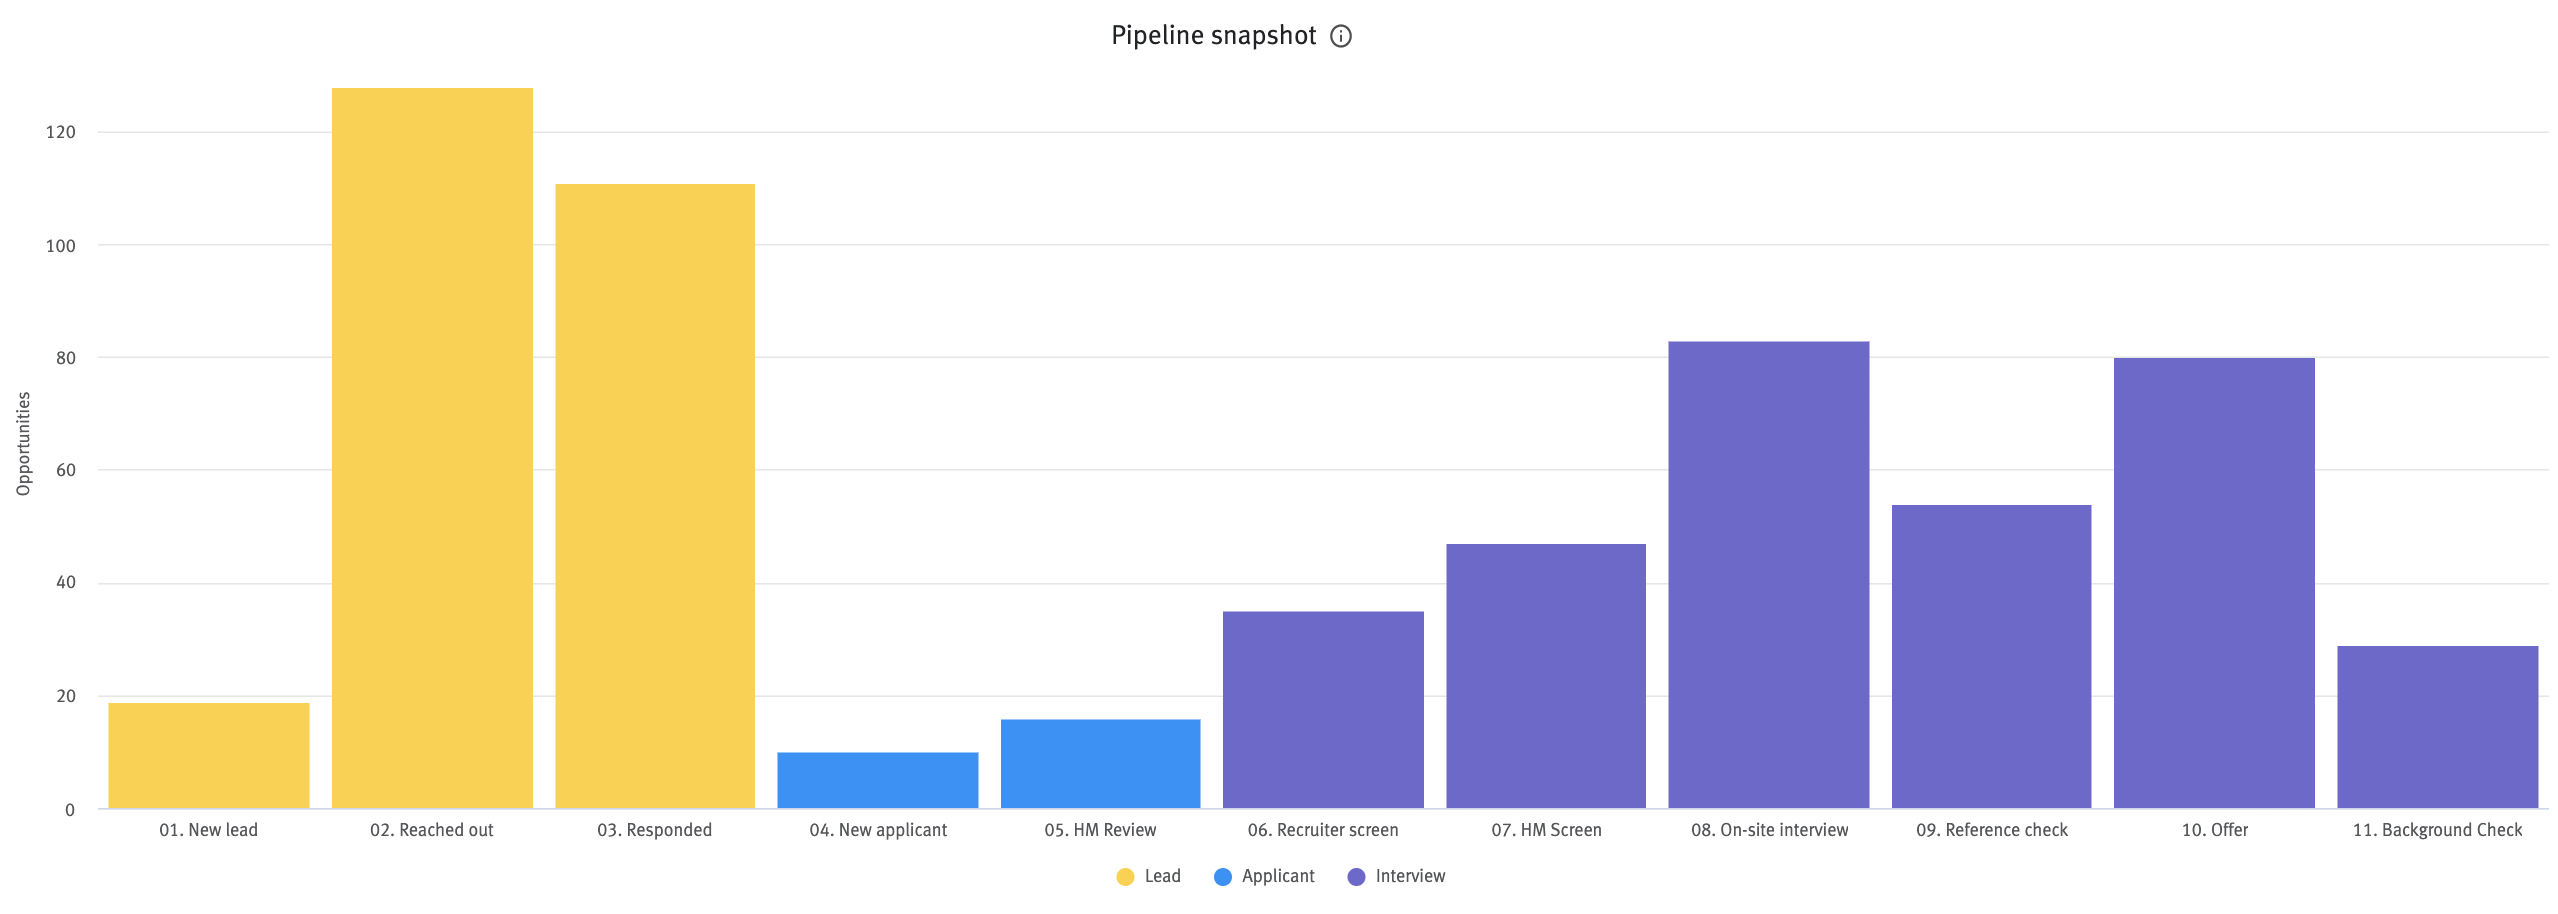 Pipeline snapshot chart